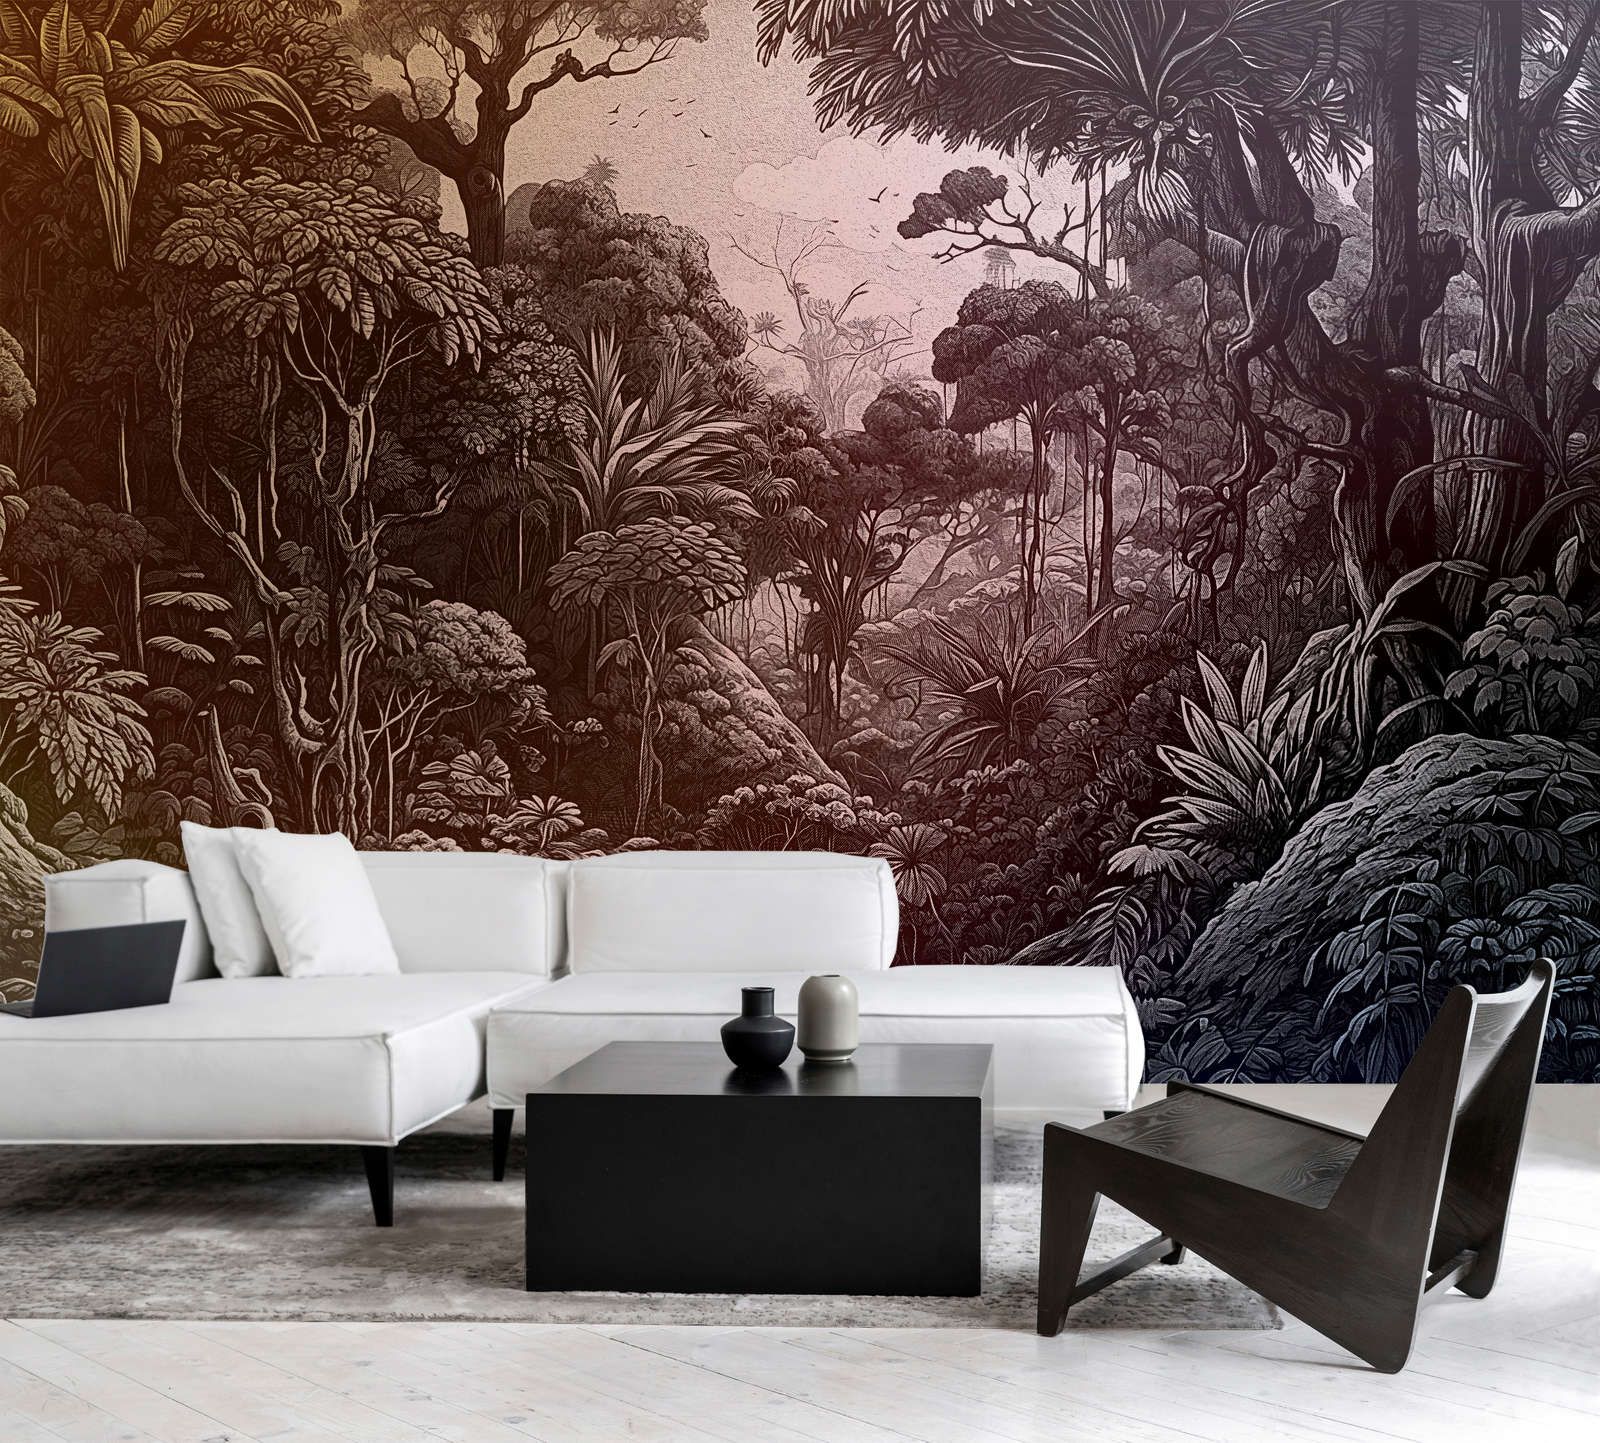             Photo wallpaper »liana« - Jungle design with colour gradient - orange, violet, grey-green | matt, smooth non-woven fabric
        